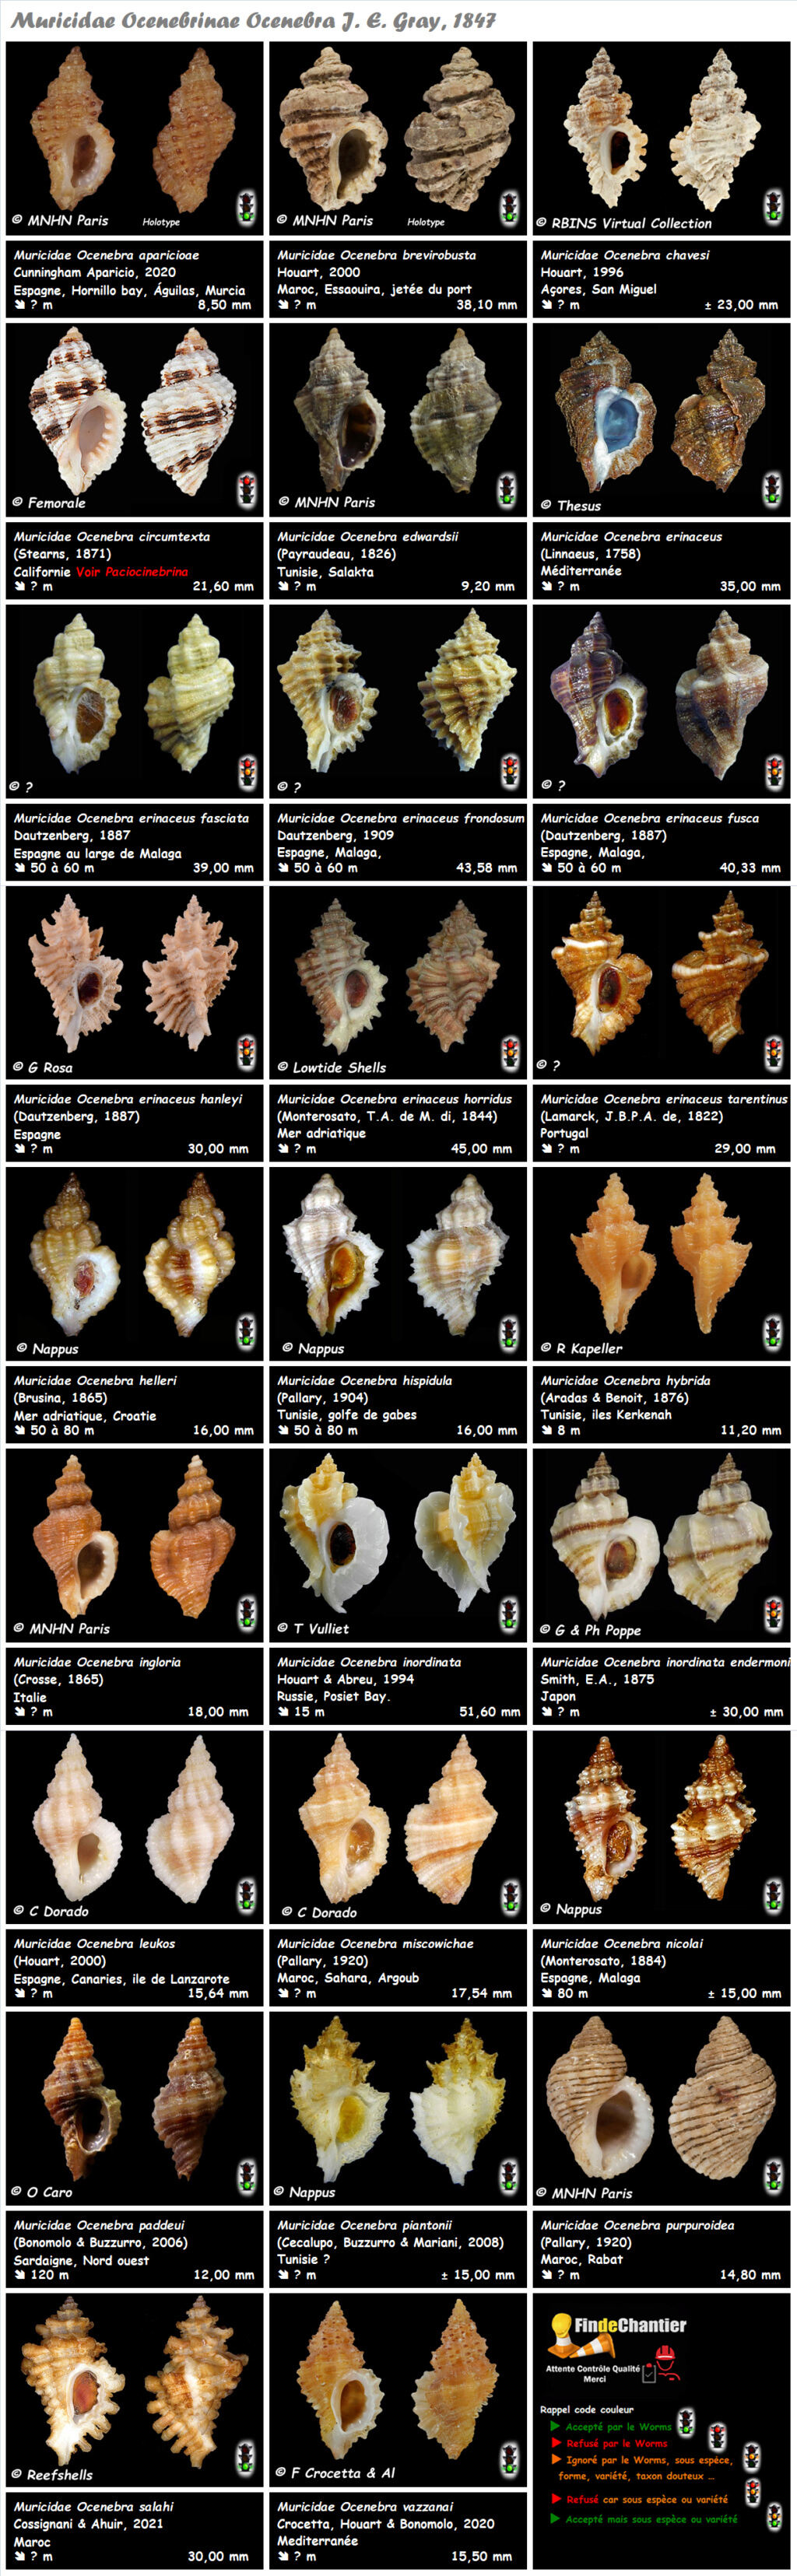  Muricidae Ocenebrinae Ocenebra - Le genre, ses espèces, la planche Muric114